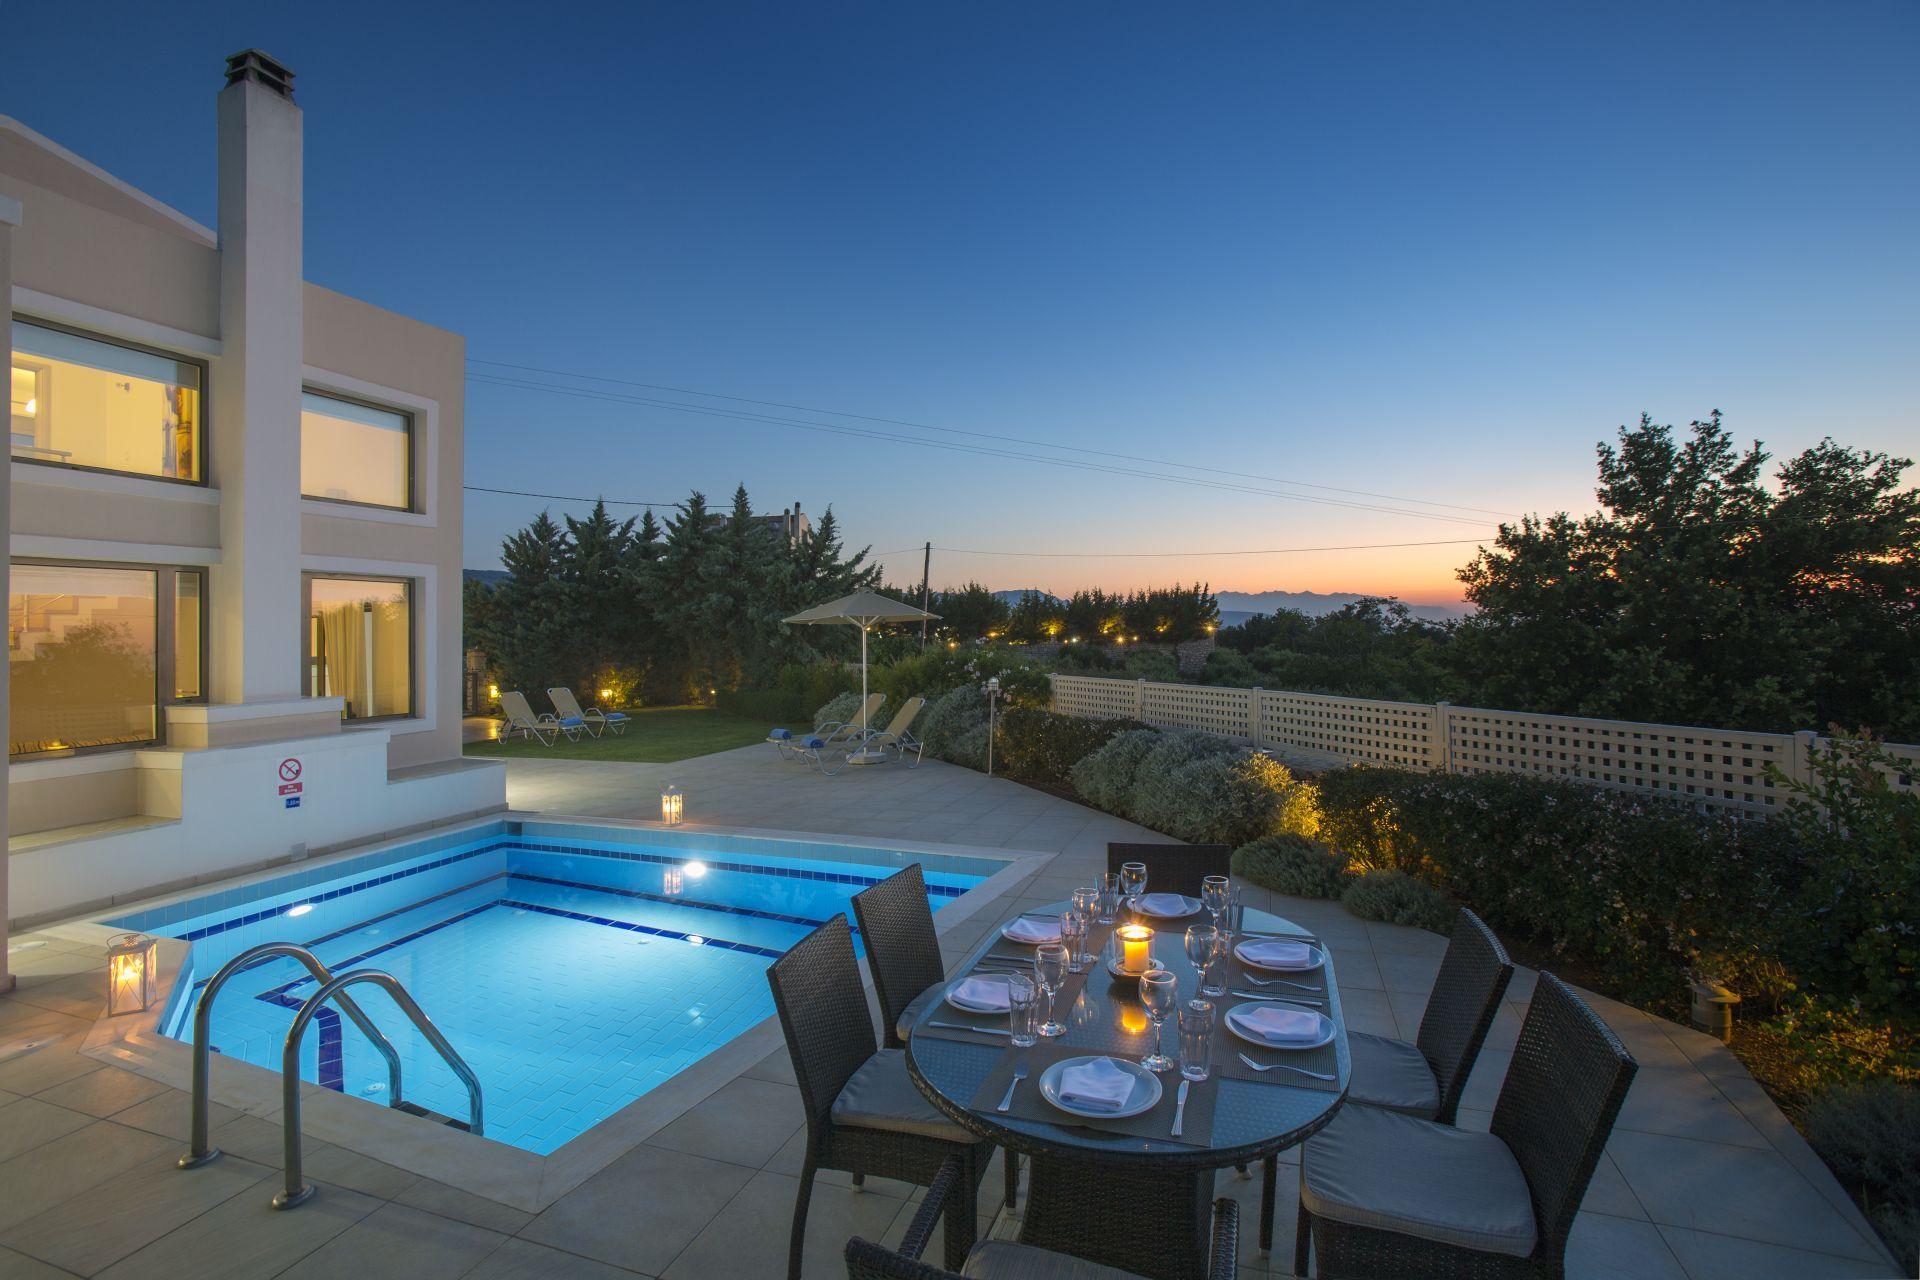 Ferienhaus mit Privatpool für 4 Personen  + 2 Ferienwohnung in Griechenland